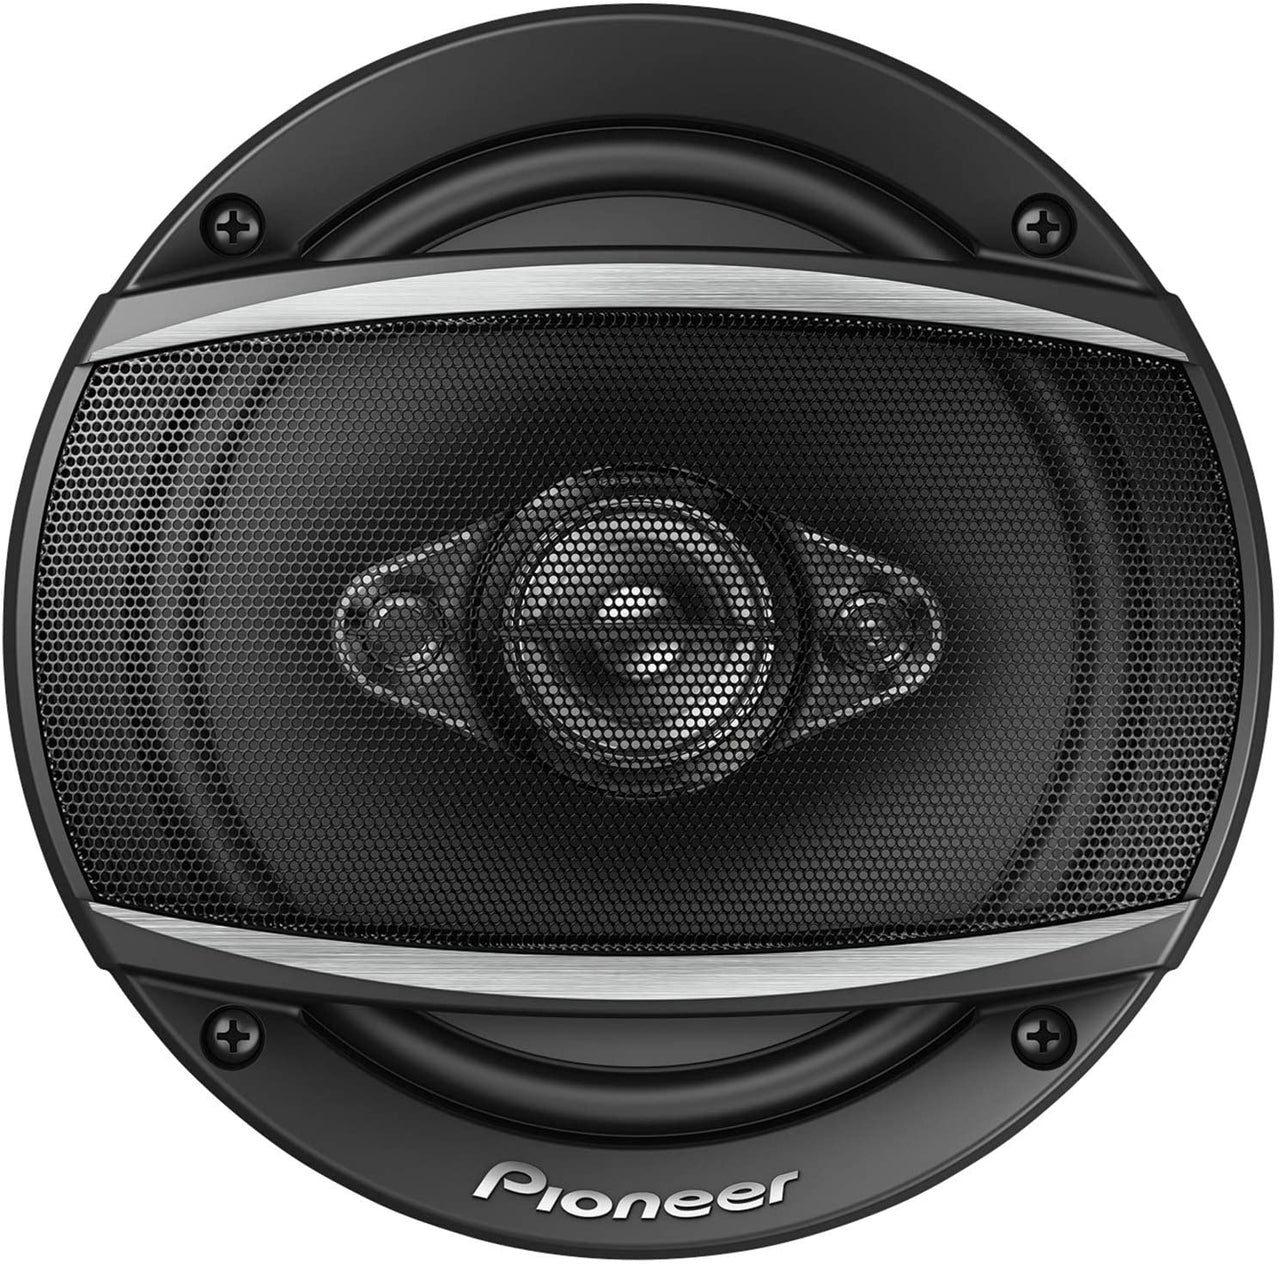 2 Pairs of Pioneer 6-1/2" 6.5" 4-Way 350 Watt Coaxial Car Audio Speakers TS-A1680F (4 Speakers)